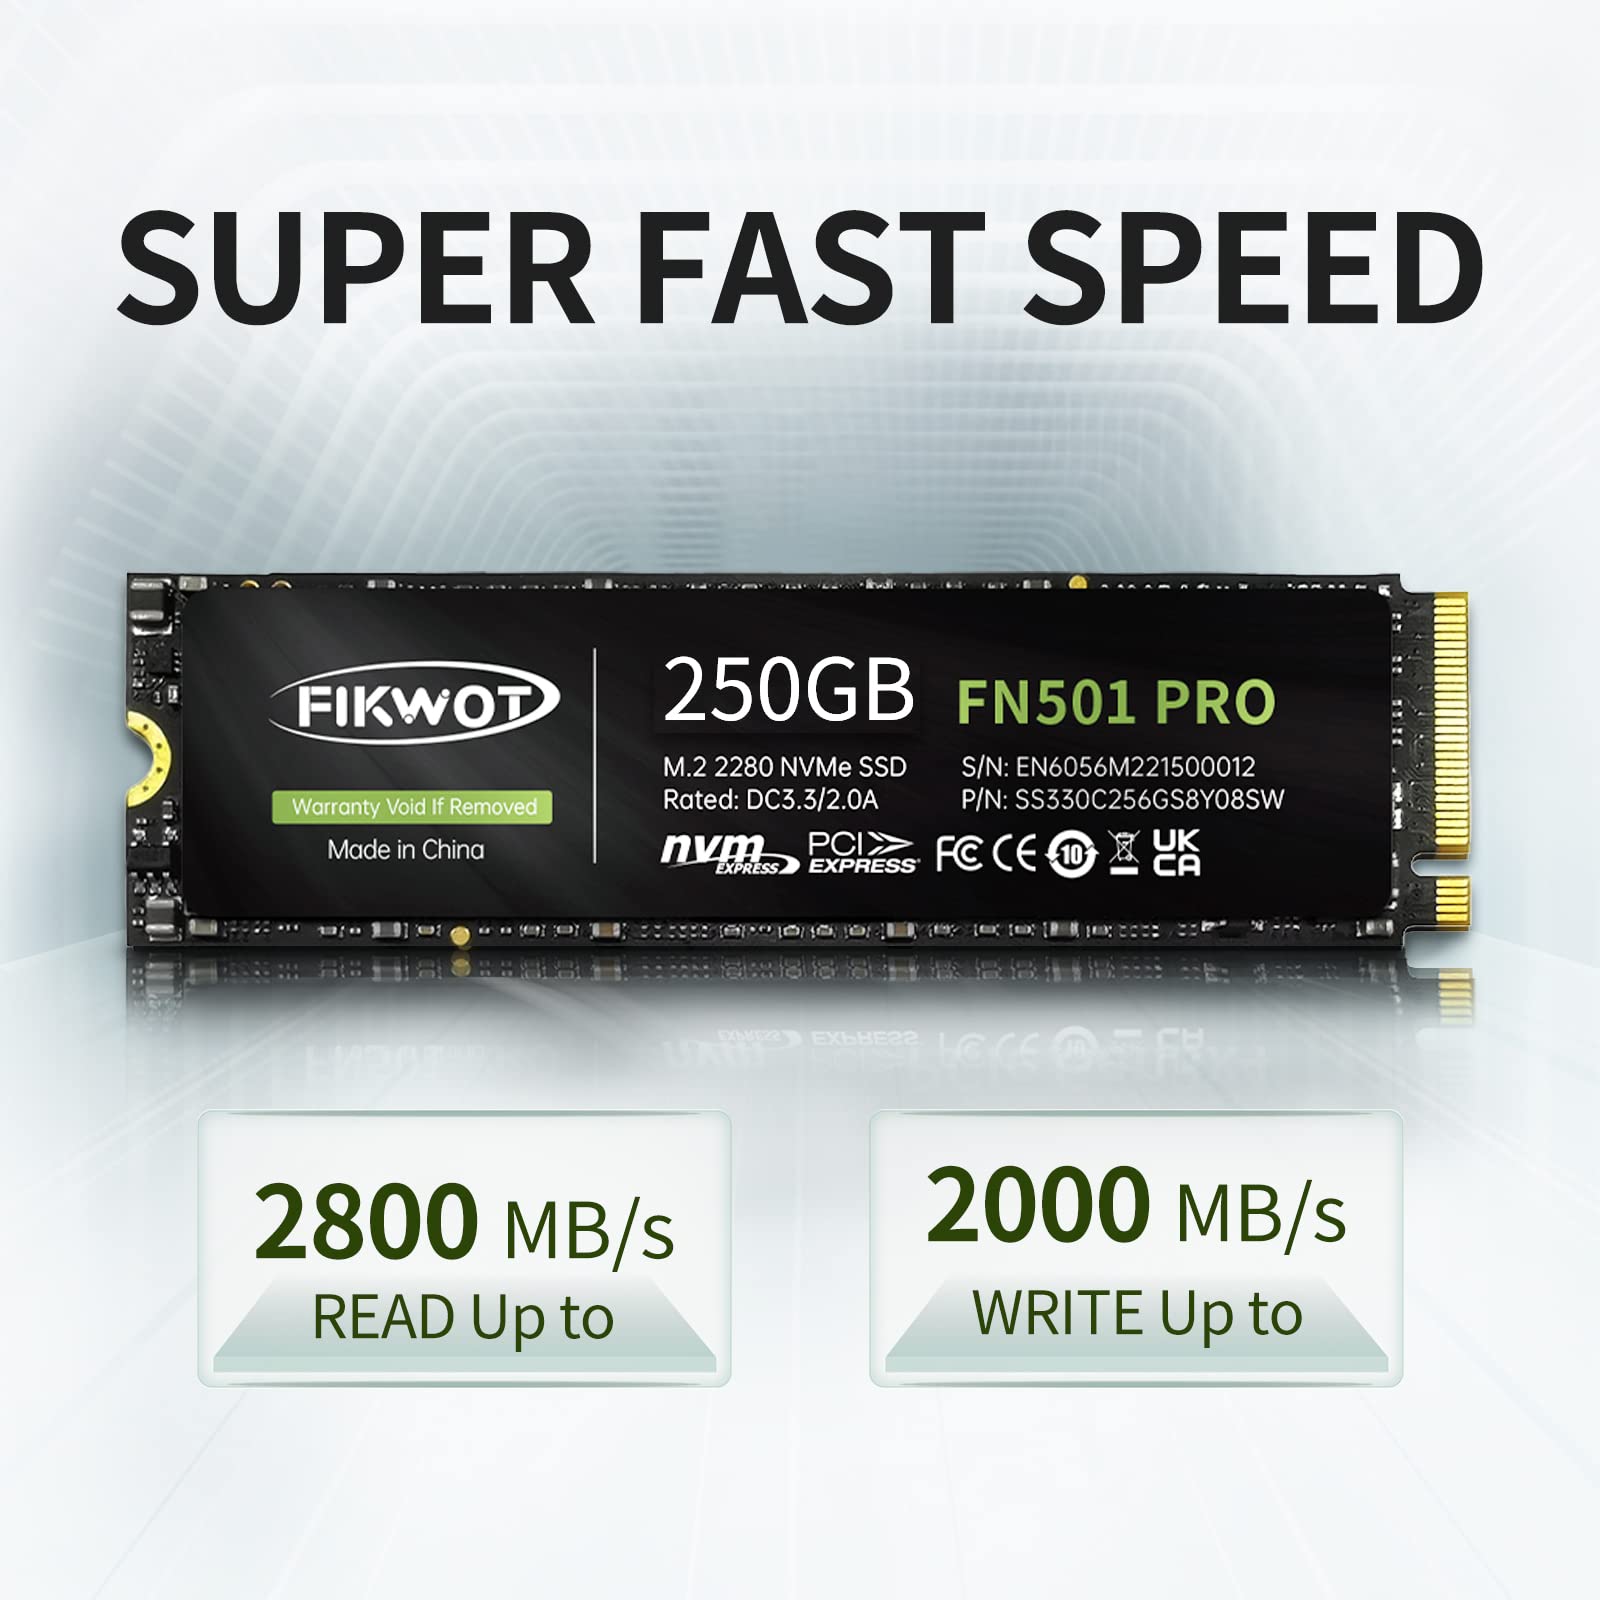 Fikwot FN501 Pro 1TB NVMe SSD - M.2 2280 PCIe Gen3 x4